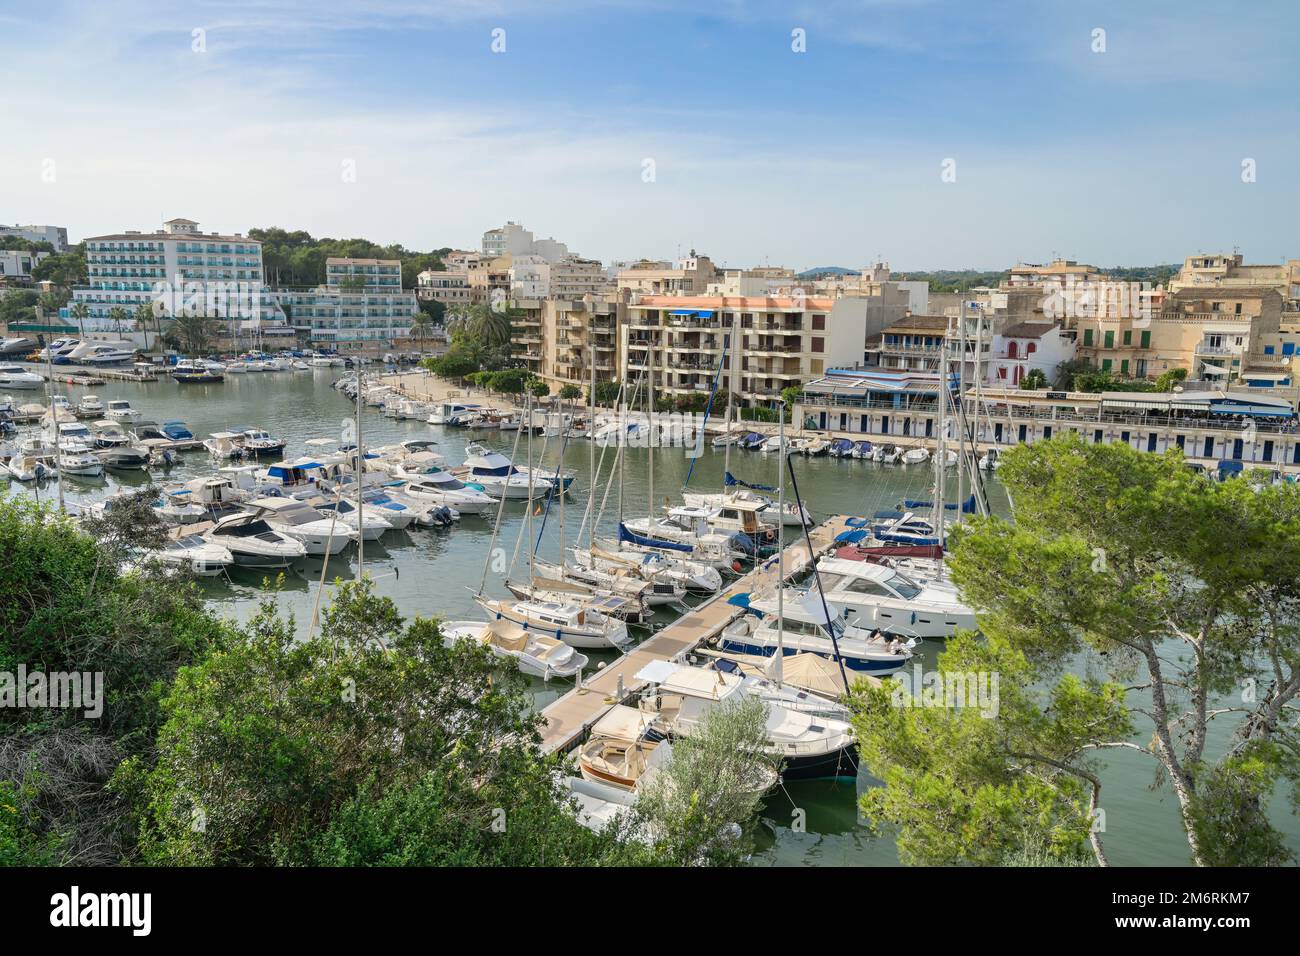 Yachthafen, Porto Cristo, Mallorca, Spanien Foto Stock